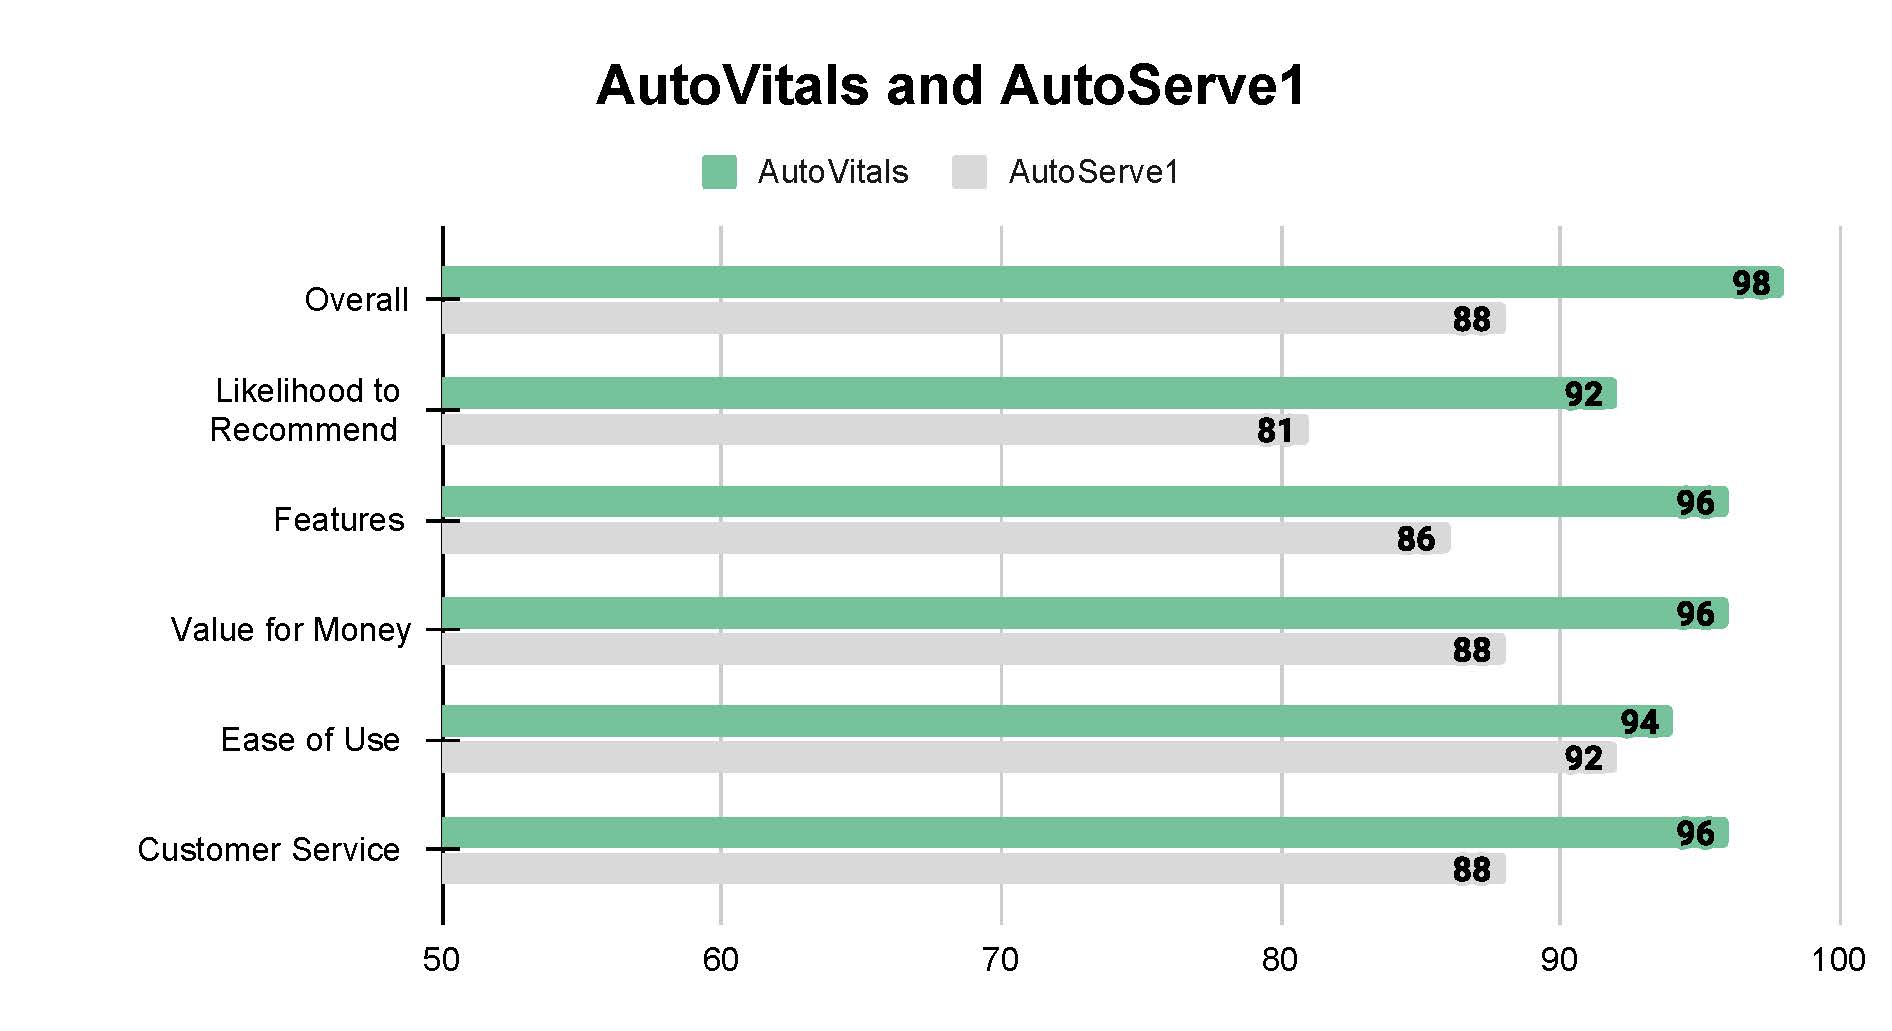 AutoVitals vs AutoServe1 